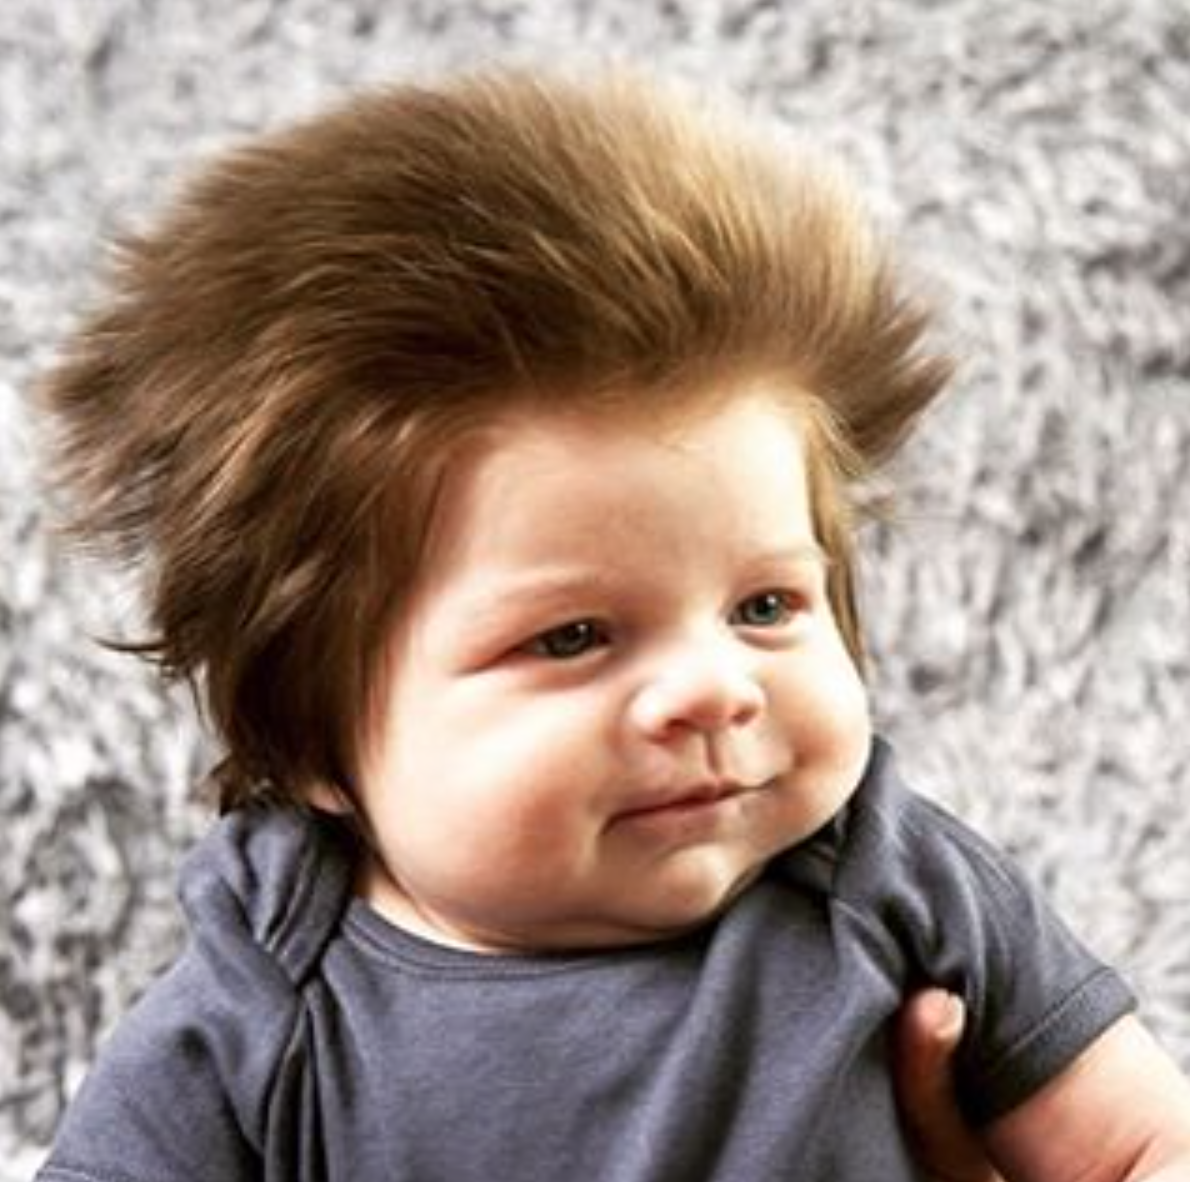 髪フサフサ赤ちゃん ジュニアコックス君 が可愛すぎる なにこの剛毛やばいんですけど ぽころぐ